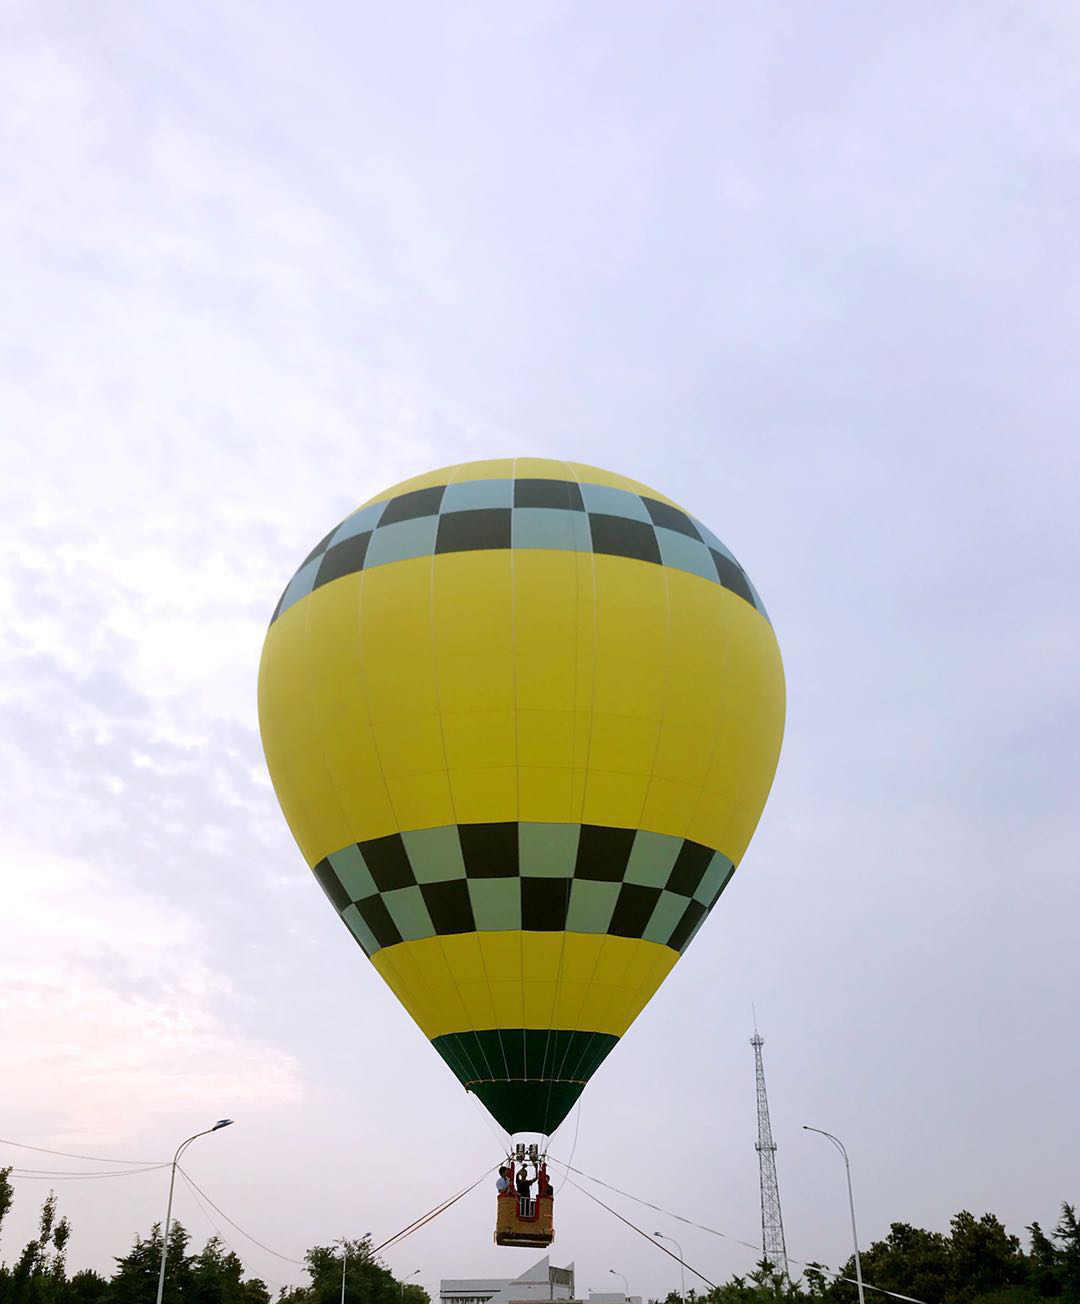 ZT一7(四人球) 批发价：2.88万-四人球-热气球租赁,景区载人观光热气球,商用广告热气球,江苏中天航空装备有限公司